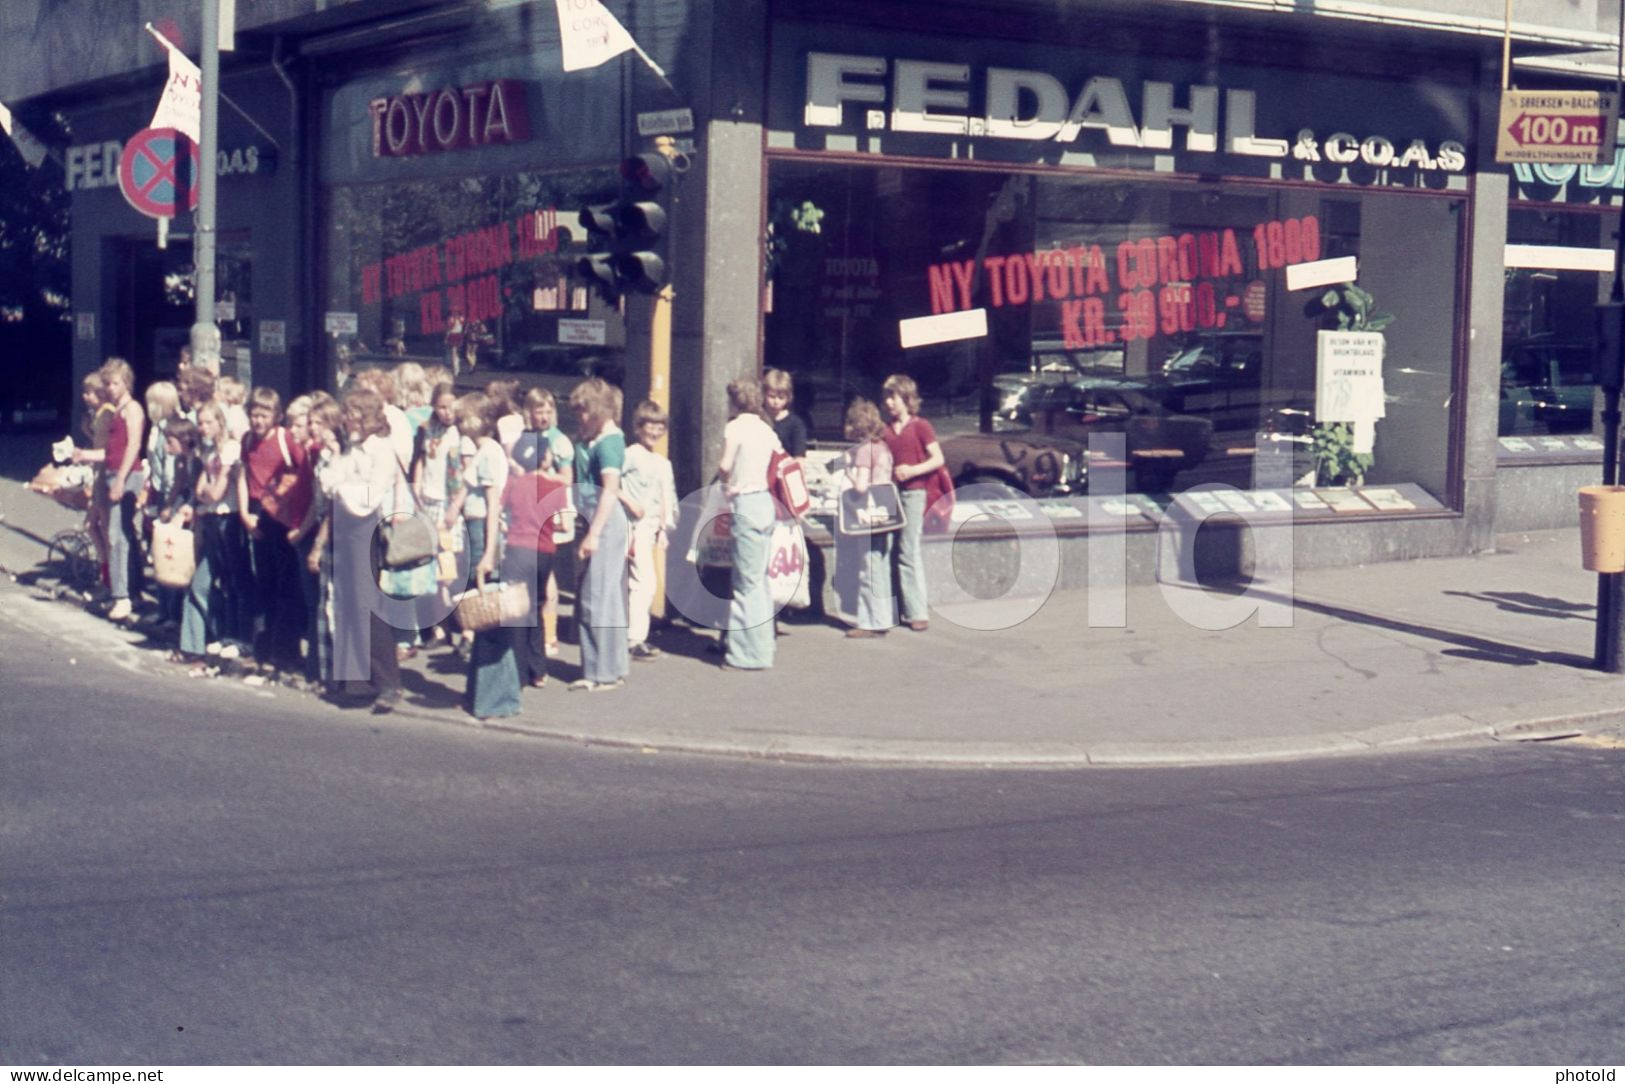 1977 F.E.DAHL TOYOTA CORONA 1600 CAR STAND OSLO NORGE AMATEUR 35mm DIAPOSITIVE SLIDE Not PHOTO No FOTO NB4109 - Diapositivas